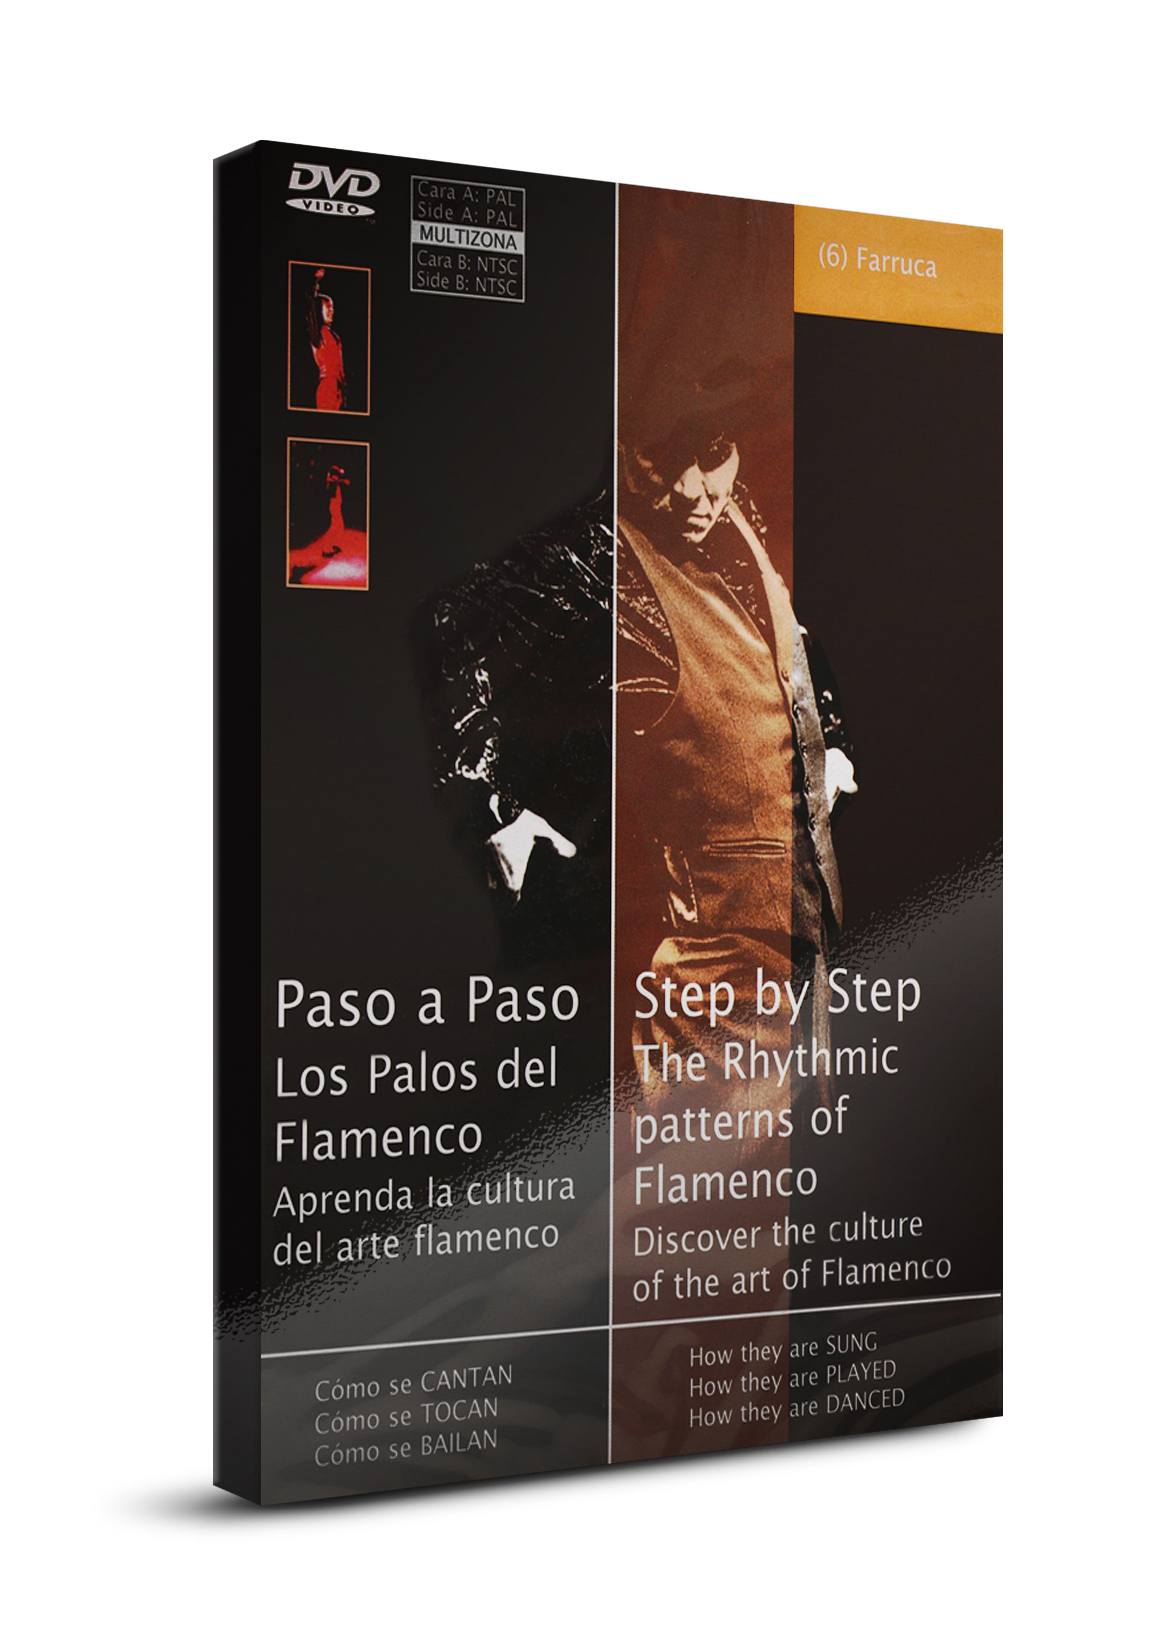 Cours de danse flamenco Farruca DVD